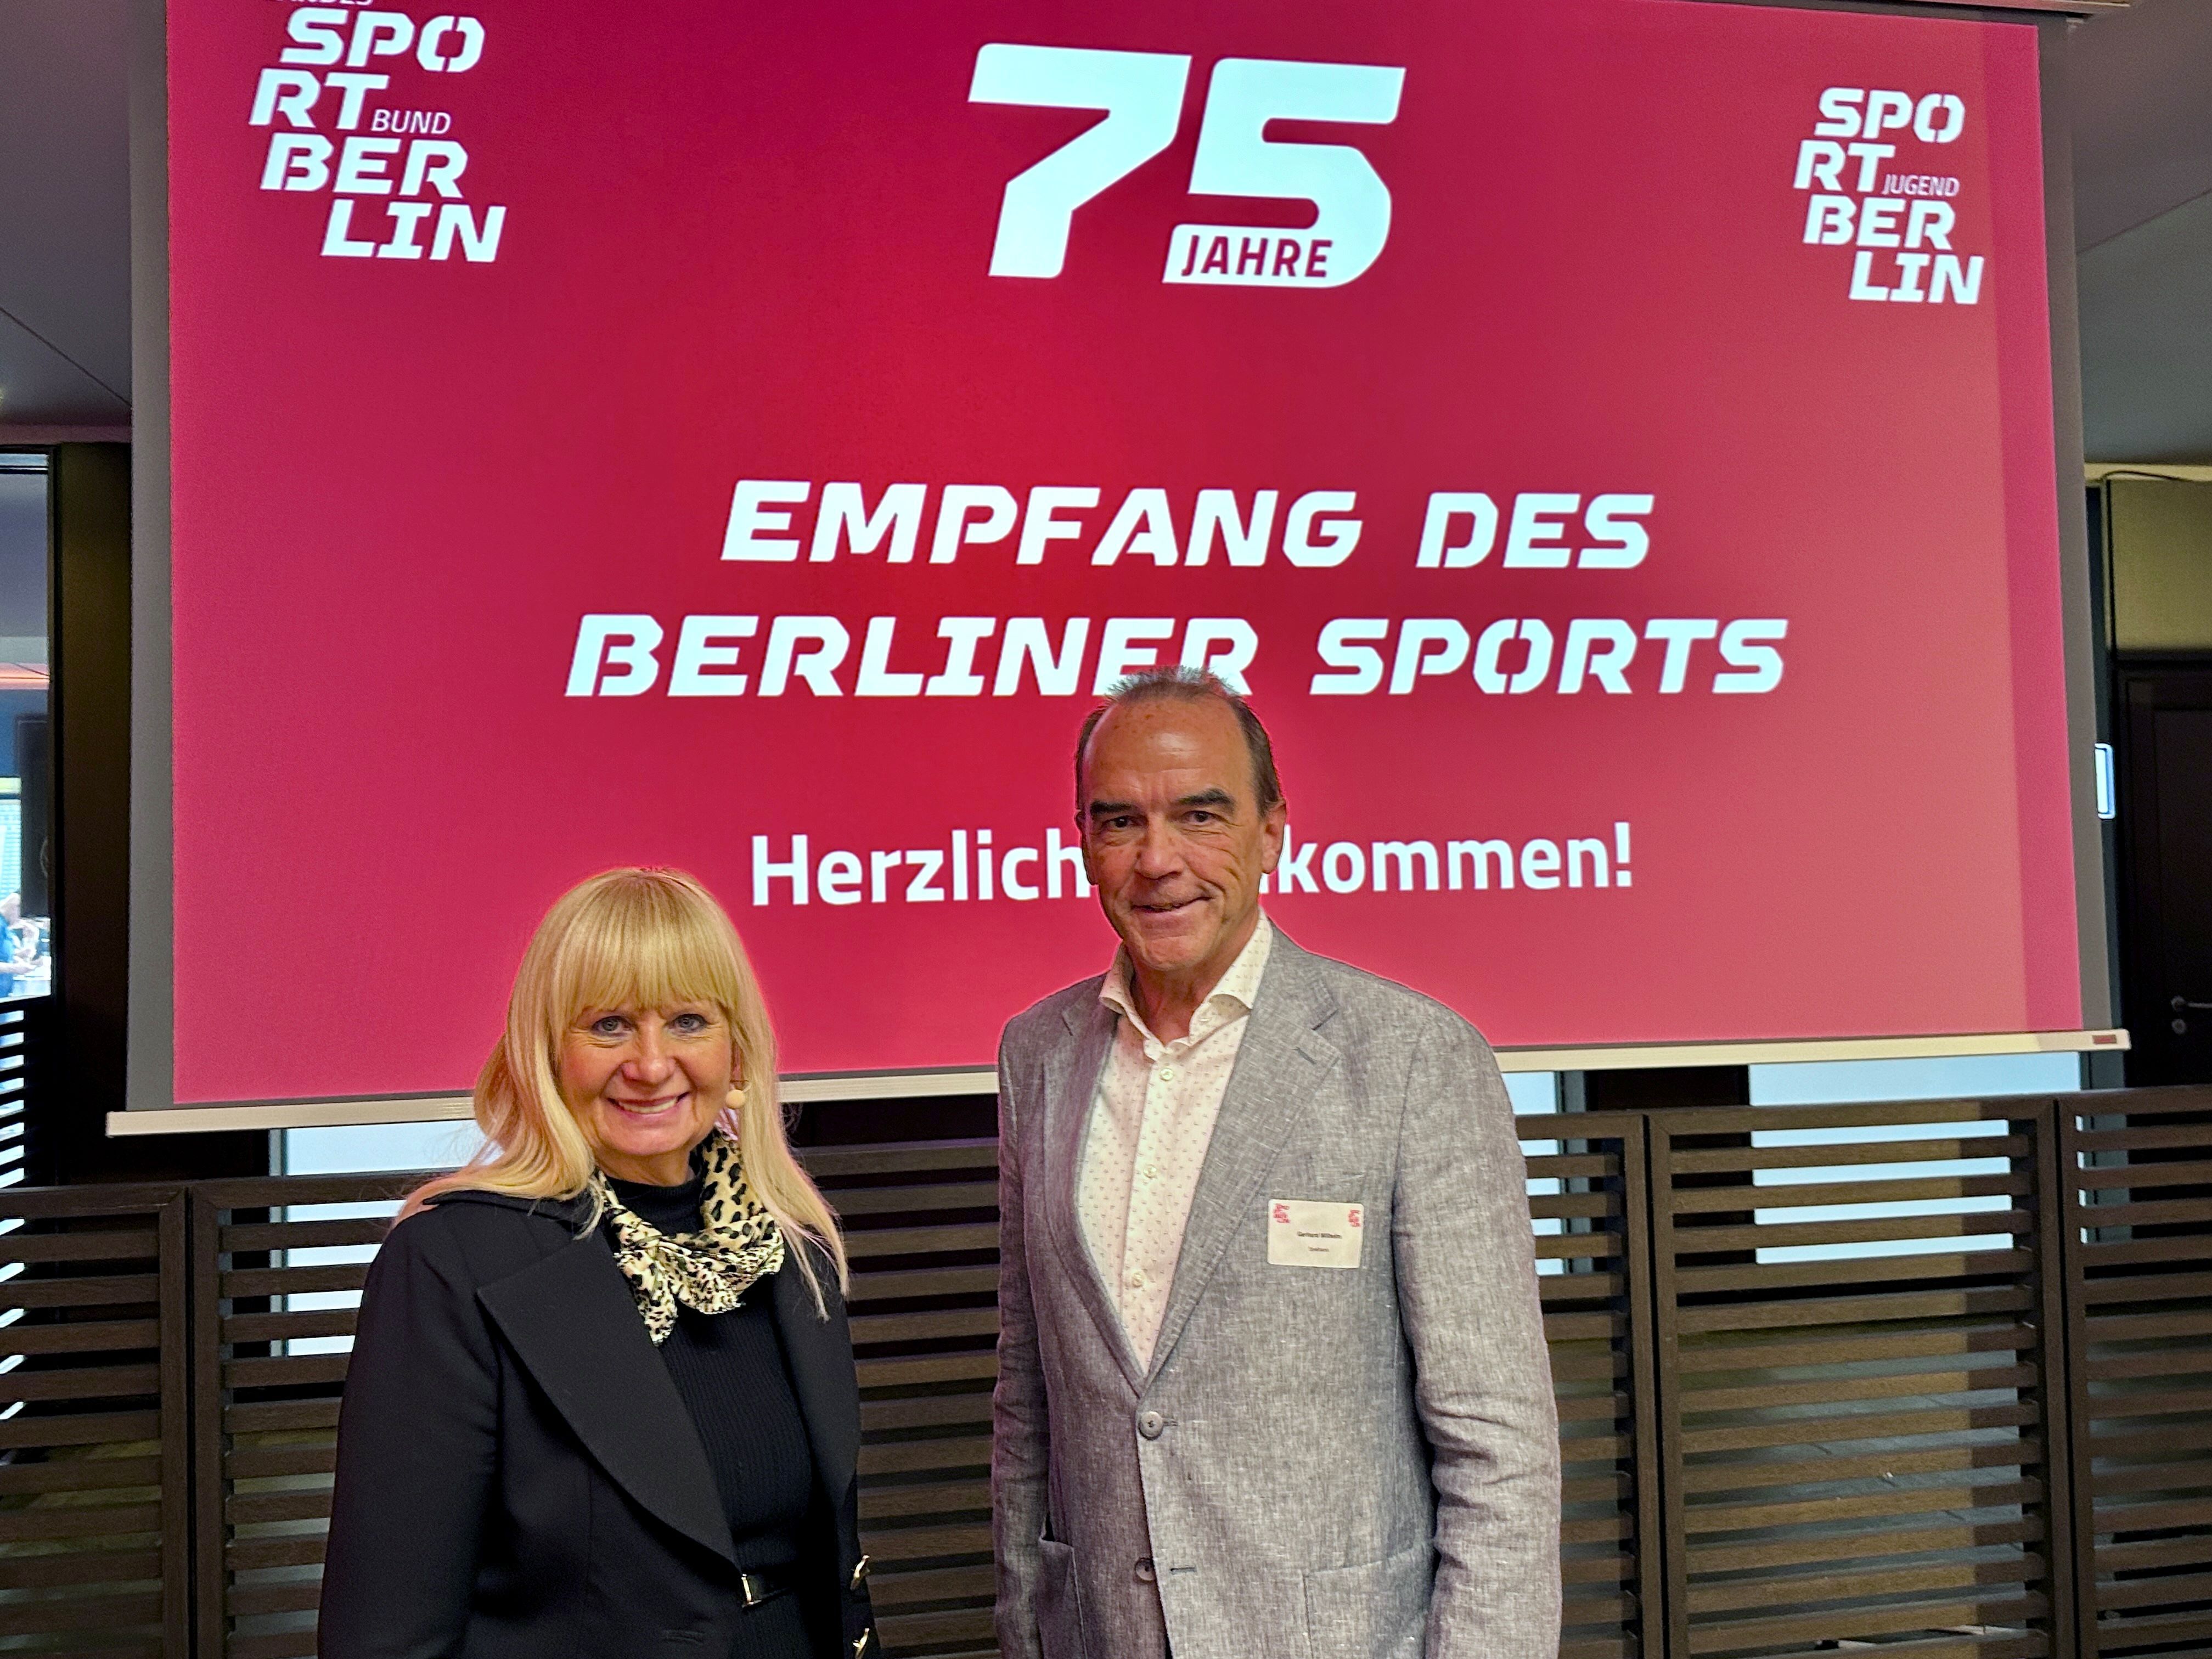 75 Jahre Landessportbund Berlin – Sponsor Spielbank Berlin gratuliert